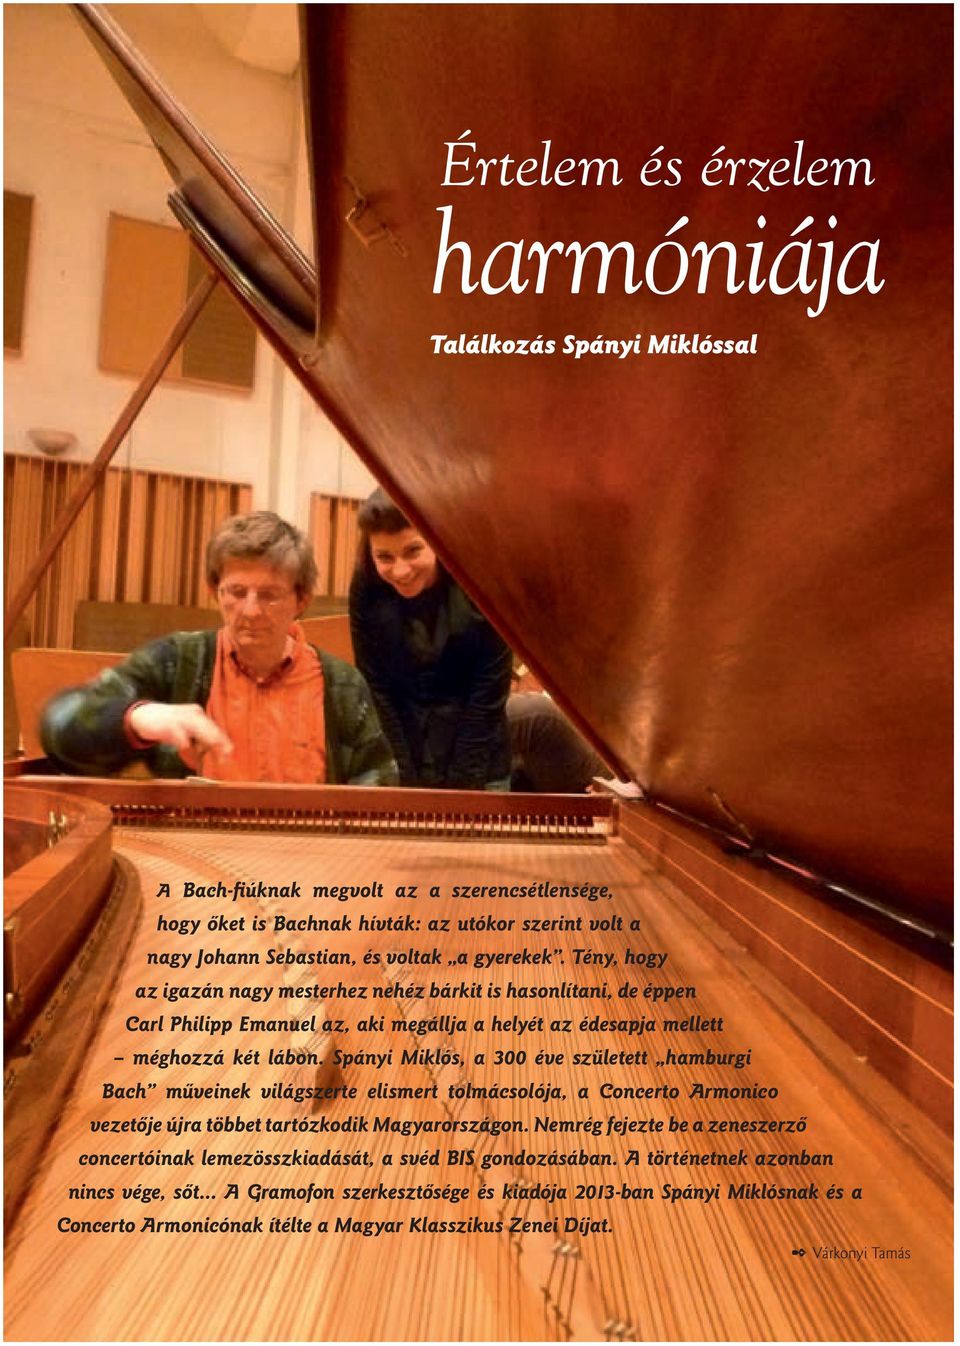 Spányi Miklós, a 300 éve született hamburgi Bach mûveinek világszerte elismert tolmácsolója, a Concerto Armonico vezetôje újra többet tartózkodik Magyarországon.